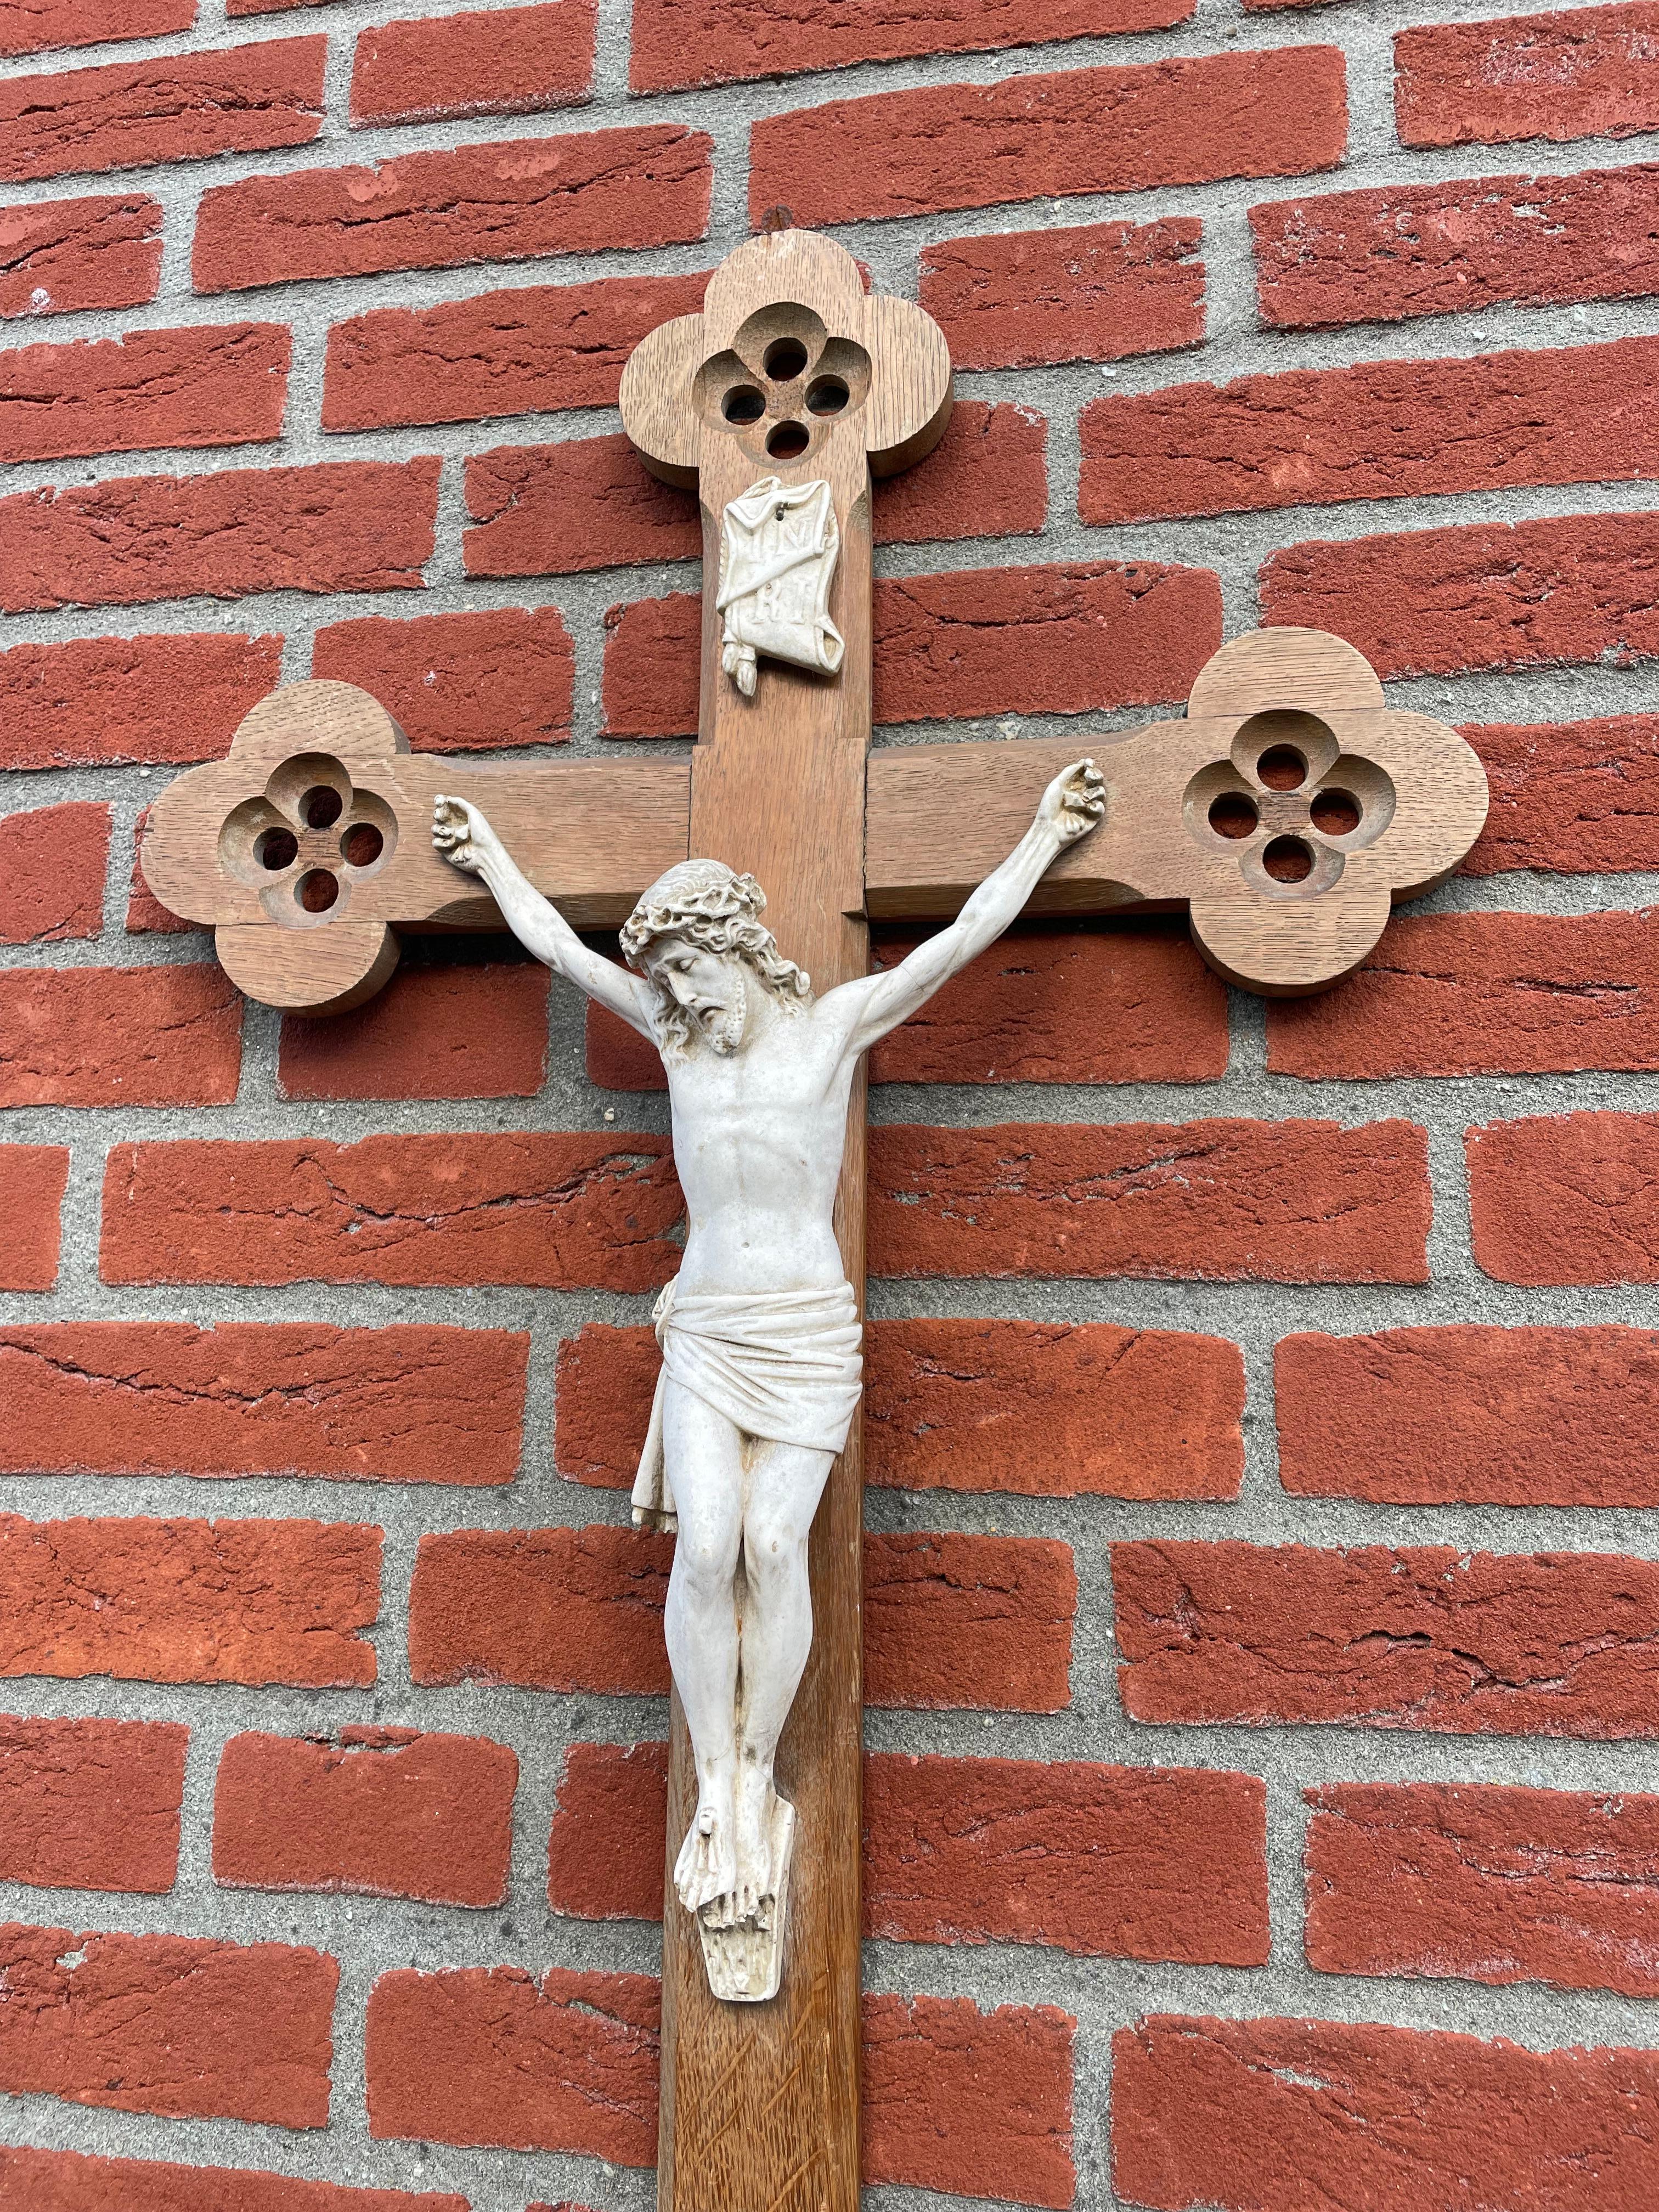 Crucifix d'église de style gothique avec un corps du Christ en argile magnifiquement détaillé.

Les éléments gothiques quadrilobés, sculptés à la main à toutes les extrémités de la croix, confèrent à cet élégant crucifix un caractère tout à fait